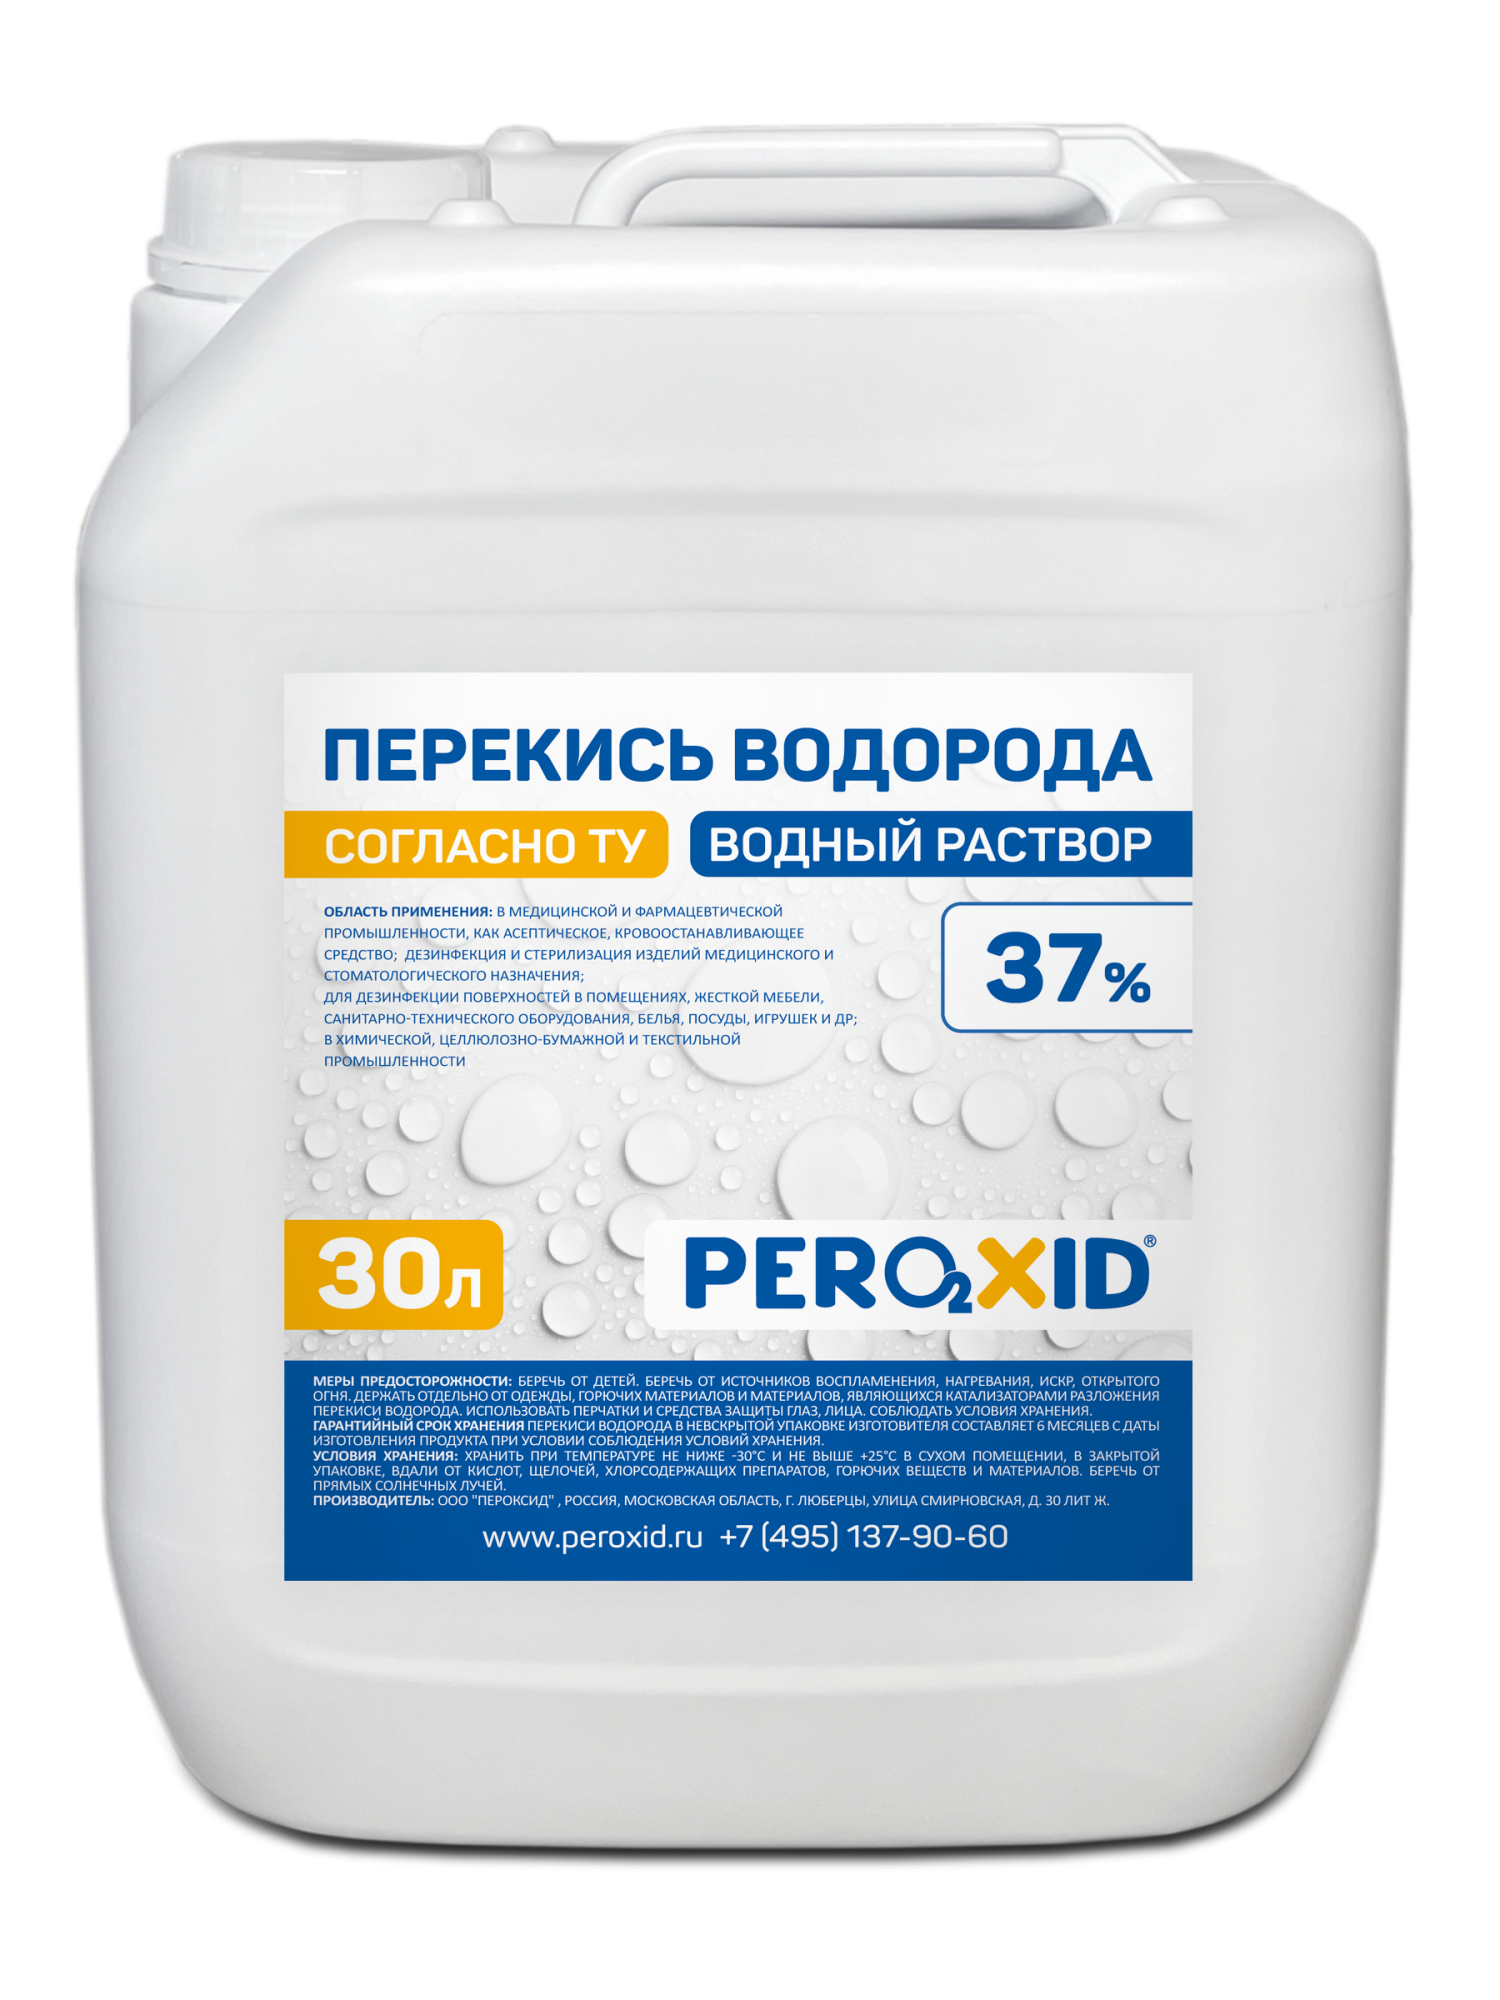 Перекись водорода водный раствор PEROXID 37% марка  ТУ 2123-001-25665344-2008 30 л/34 кг